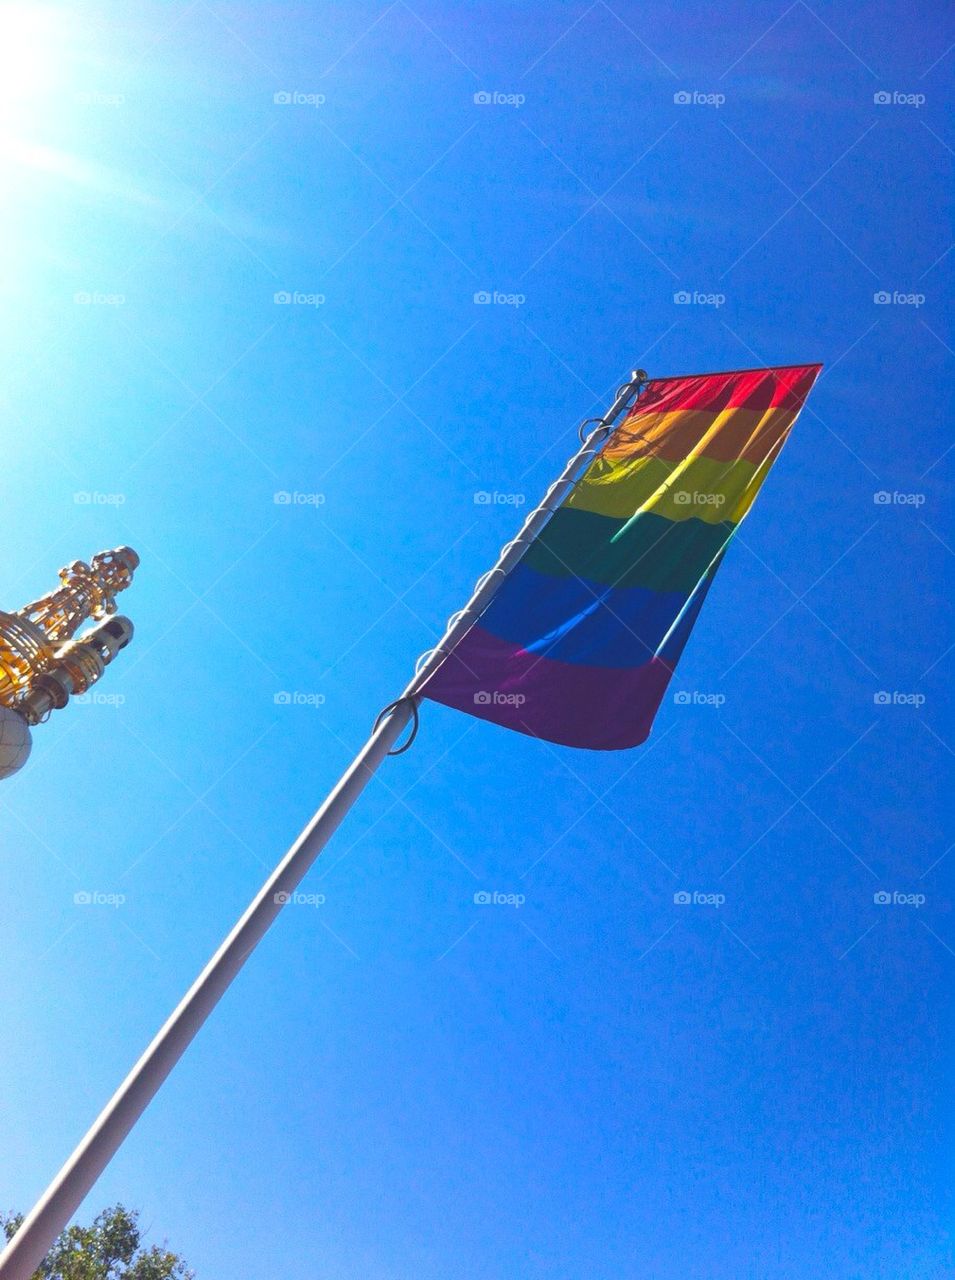 Prideflag outside Dramaten, Stockholm, Sweden